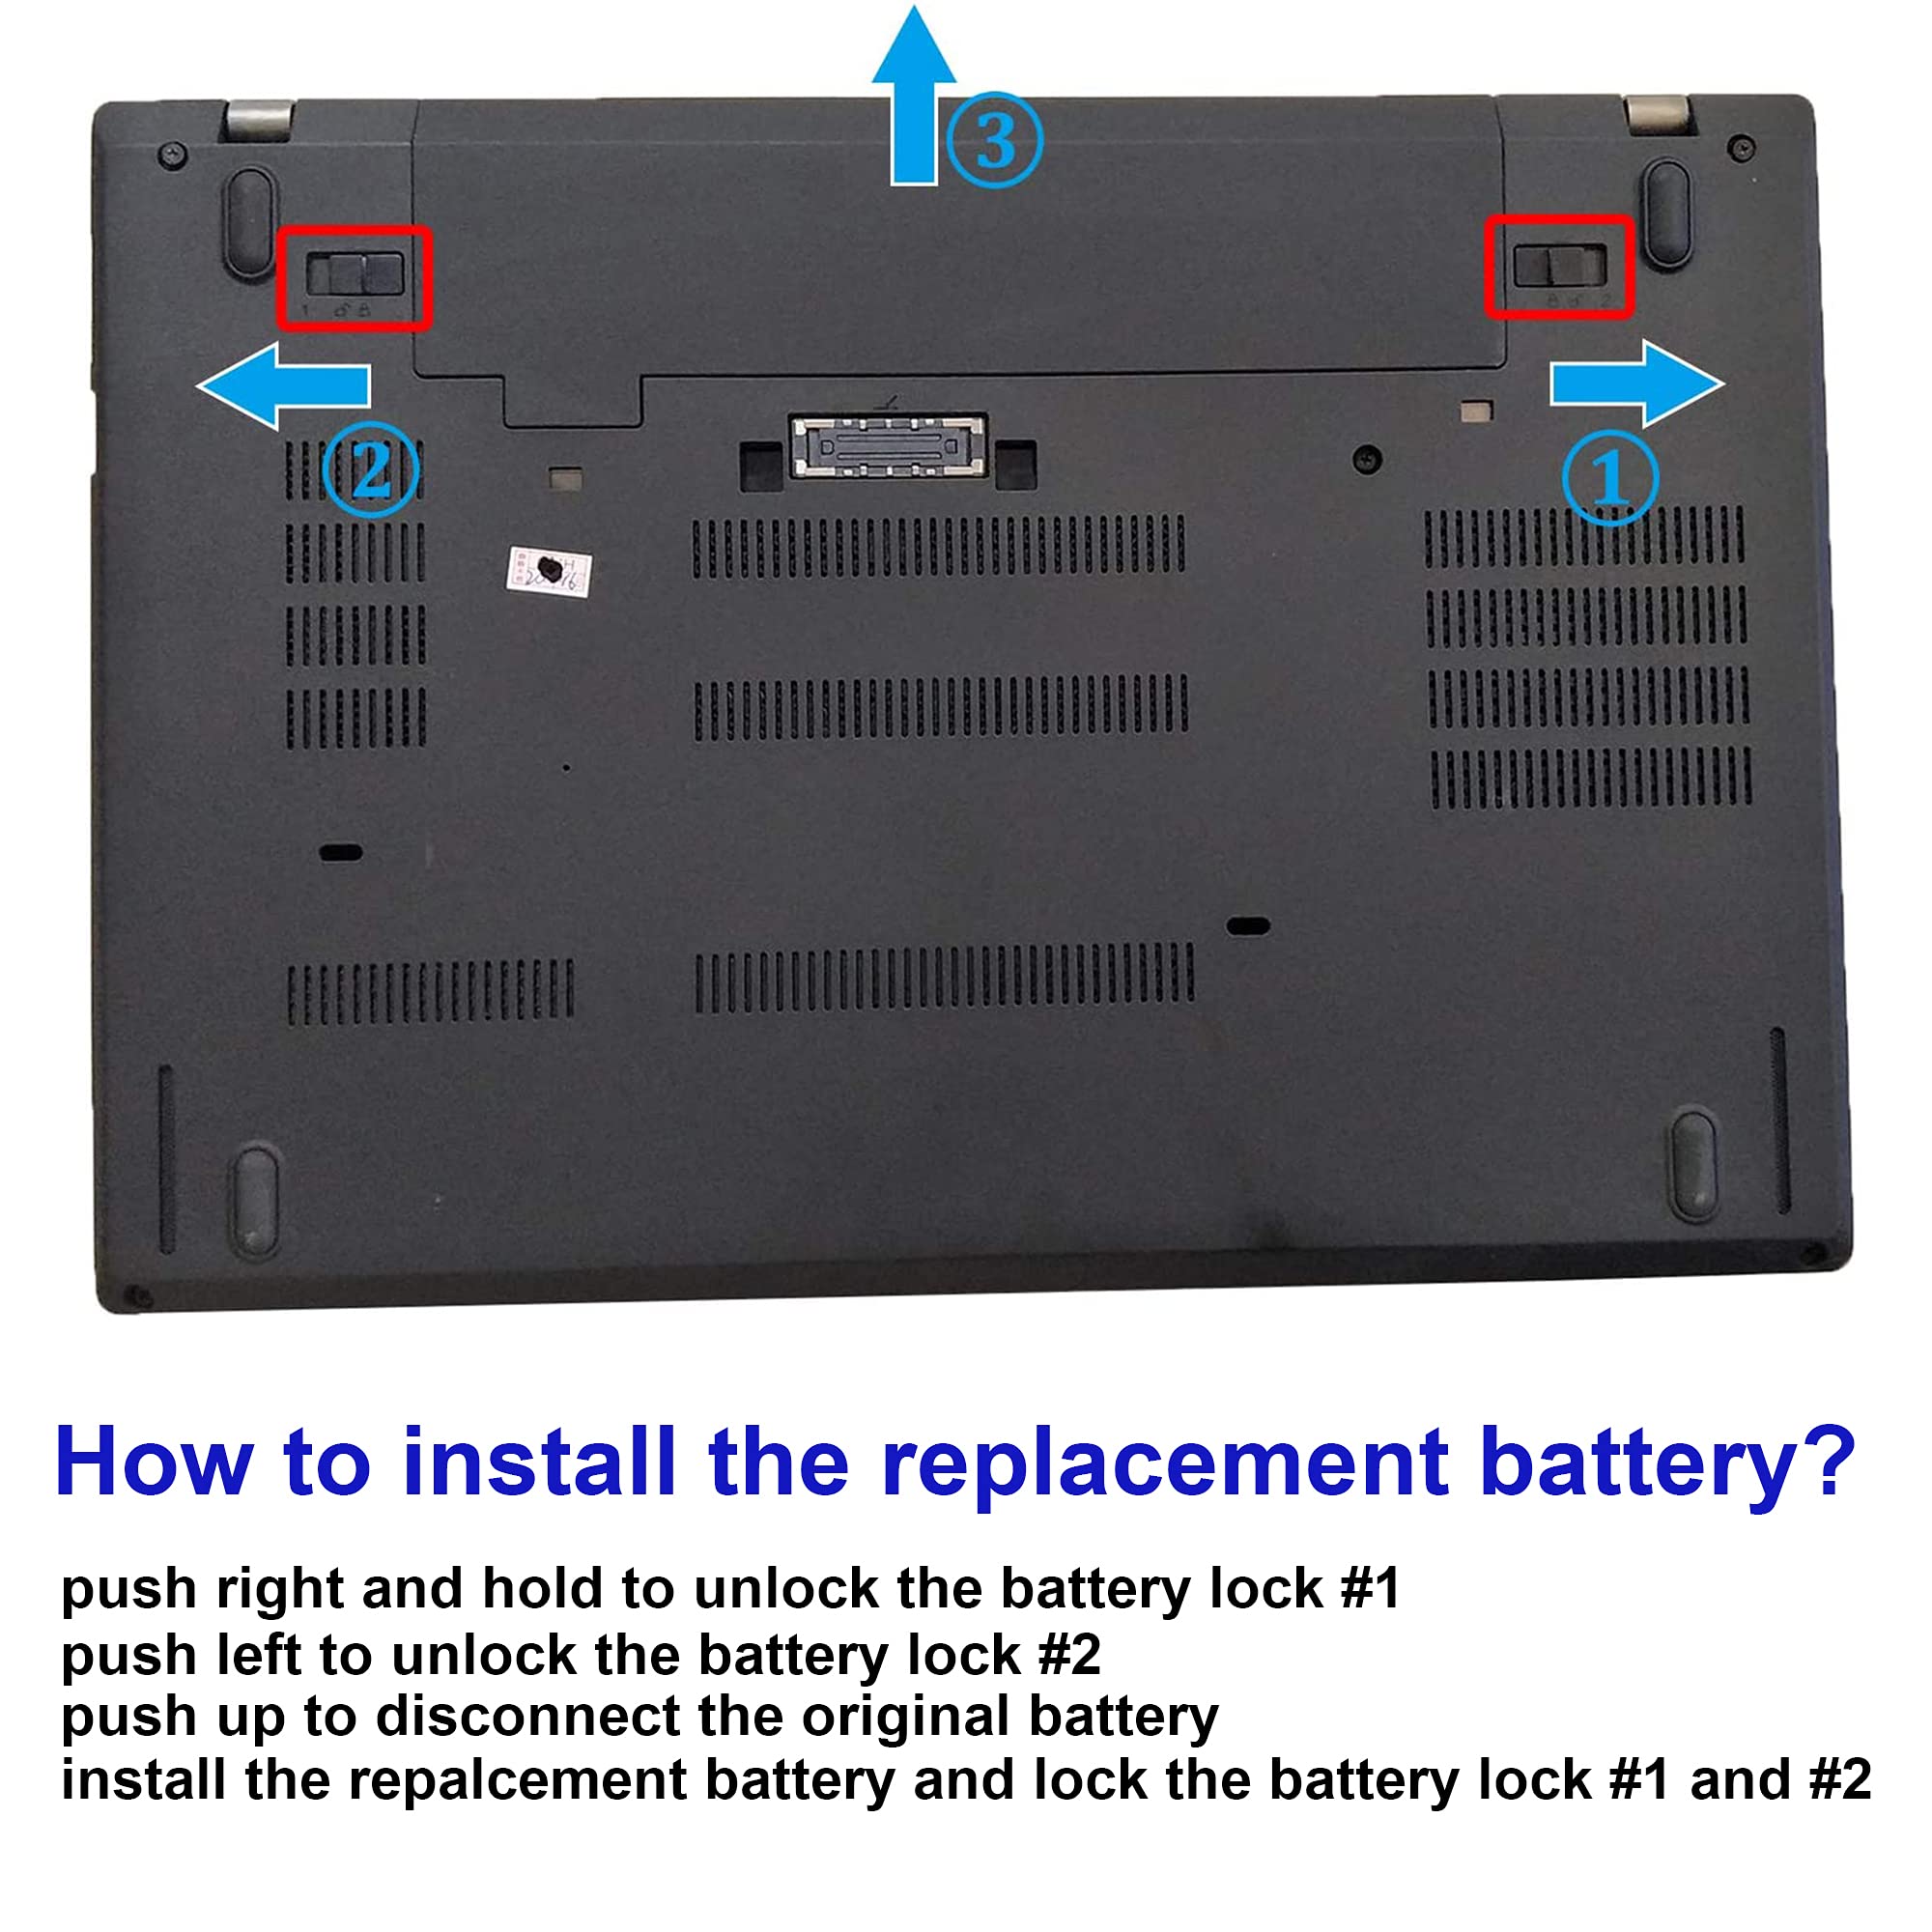 JIAZIJIA 01AV423 SB10K97580 Laptop Battery Replacement for Lenovo ThinkPad T470 T480 A475 A485 T570 T580 P51S P52S TP25 Series 61 4X50M08810 01AV422 SB10K97579 01AV424 01AV452 01AV490 11.4V 24Wh